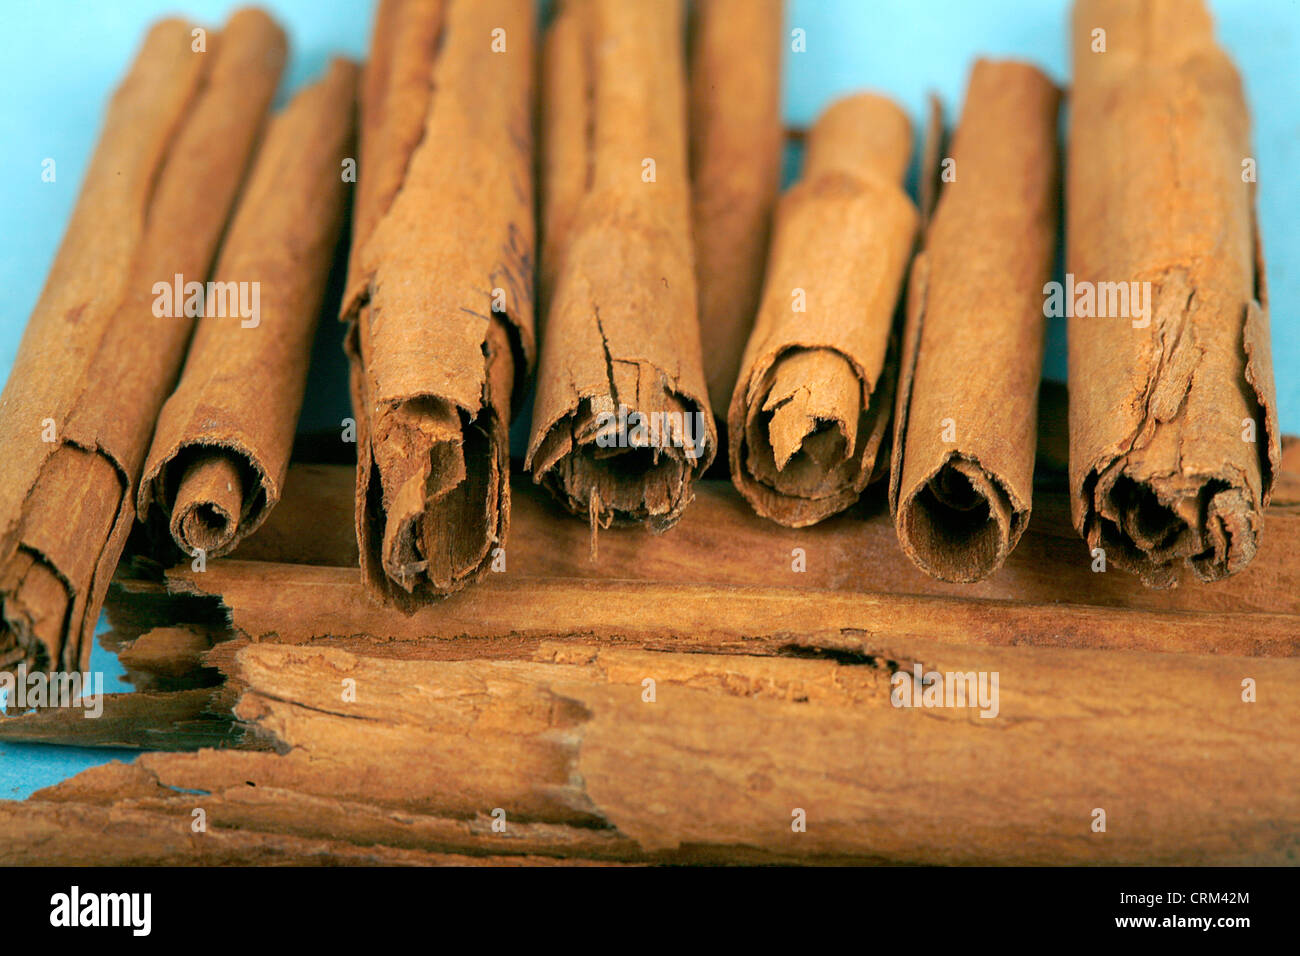 Cinnamon Sticks como hierbas medicinales han sido tradicionalmente usada para tratar el dolor de muelas y luchar contra el mal aliento, para conjurar el resfriado común, y ayuda con la digestión. Foto de stock